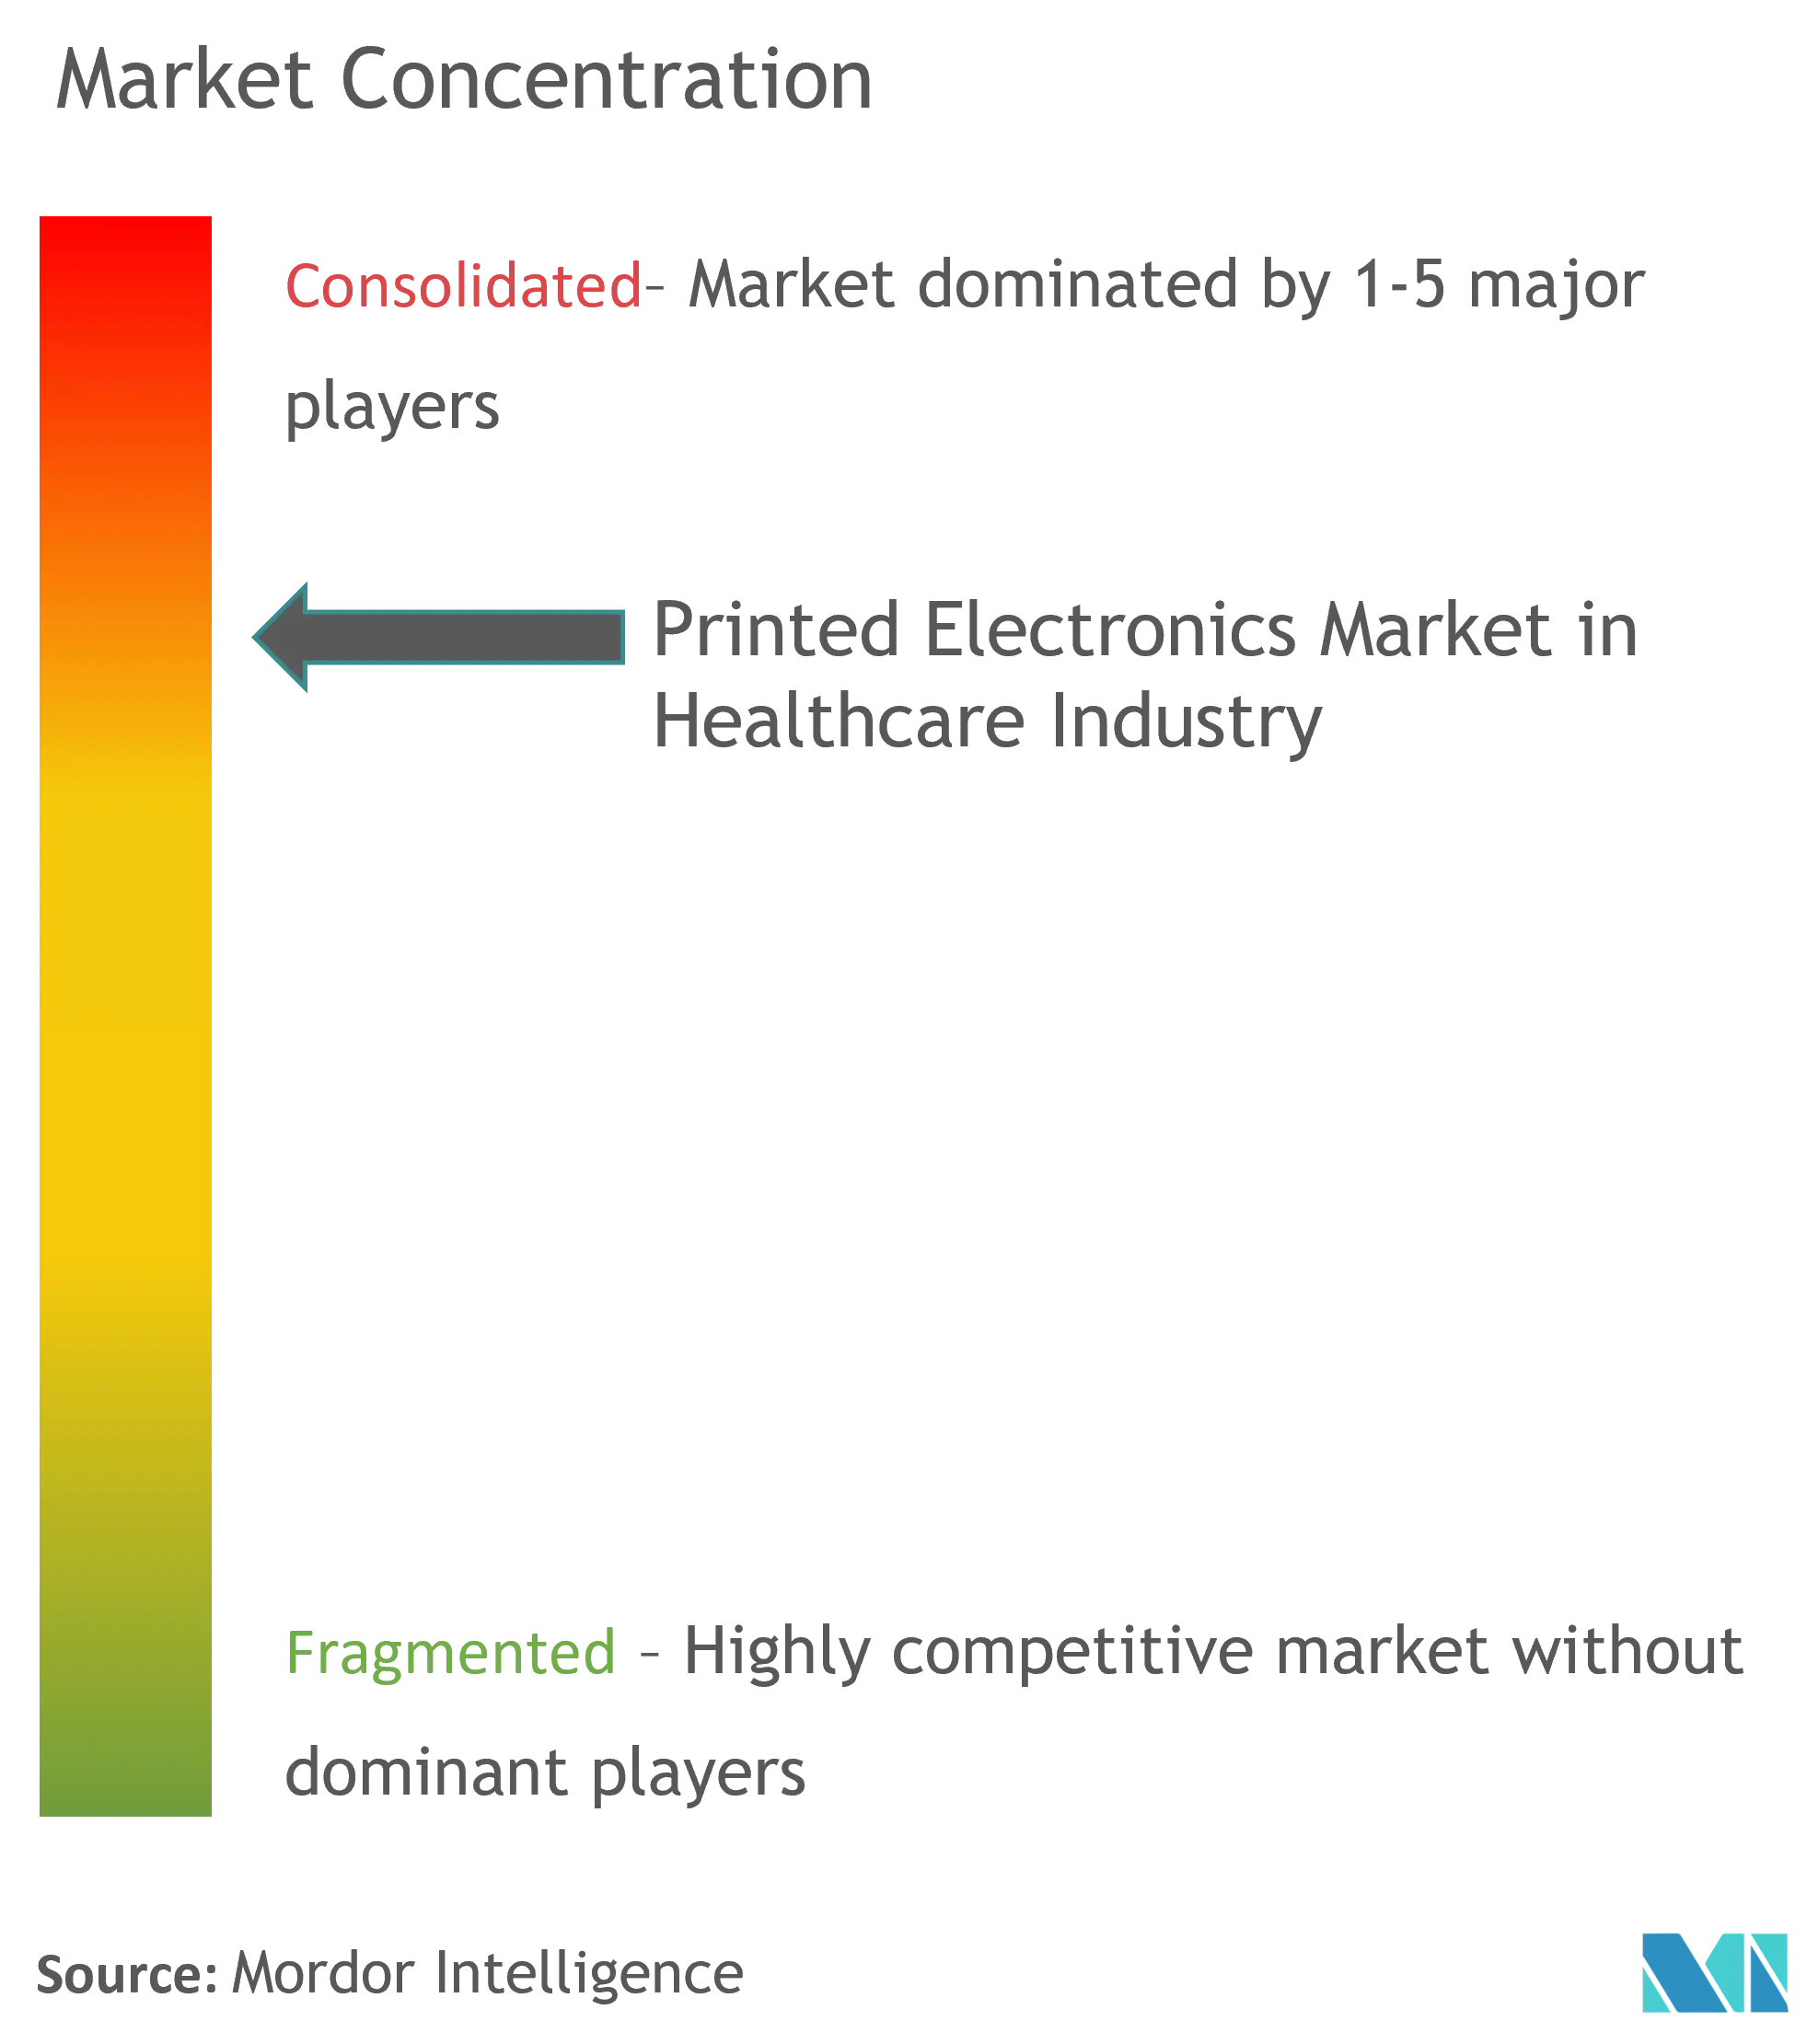 Mercado de electrónica impresa en la industria sanitaria concentración del mercado